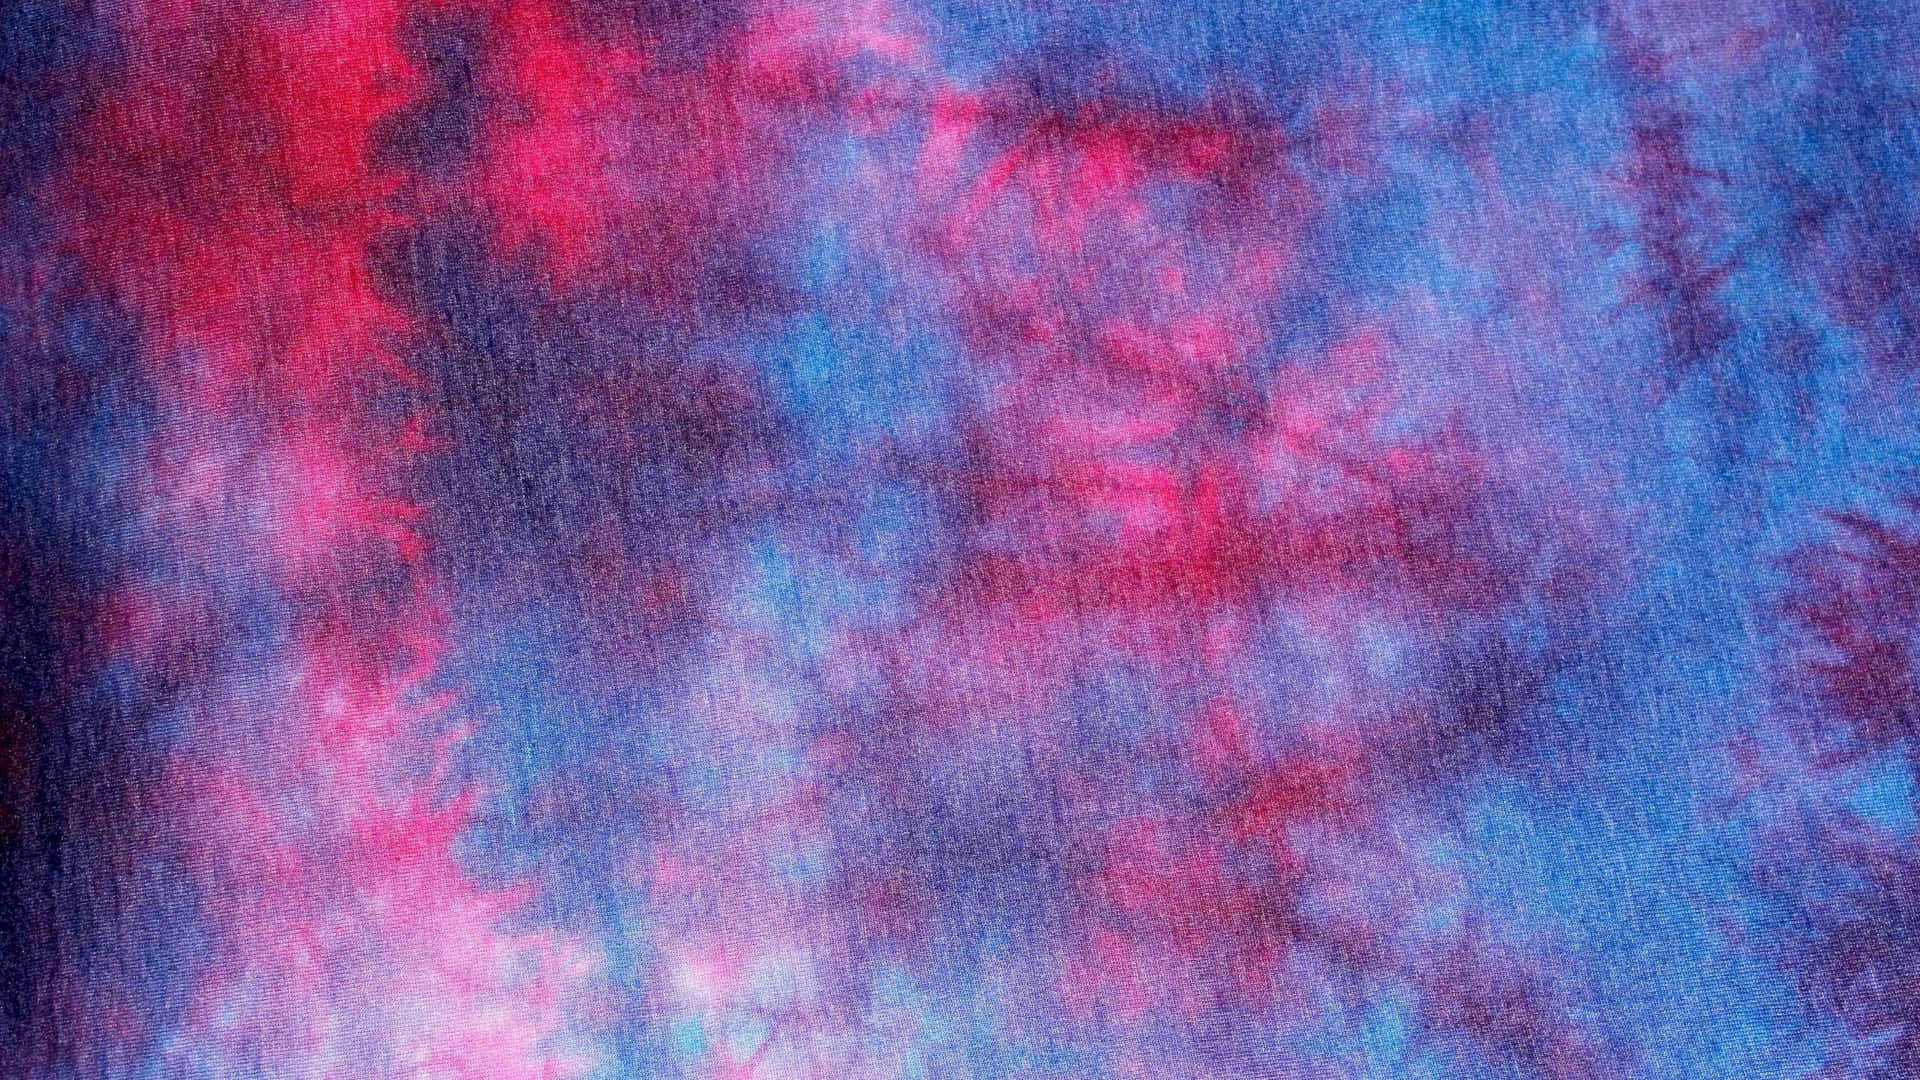 Livaupp Din Garderob Med Denna Vackra Blåa Tie-dye-mönstrade Bild Som Bakgrund På Din Dator Eller Mobiltelefon! Wallpaper